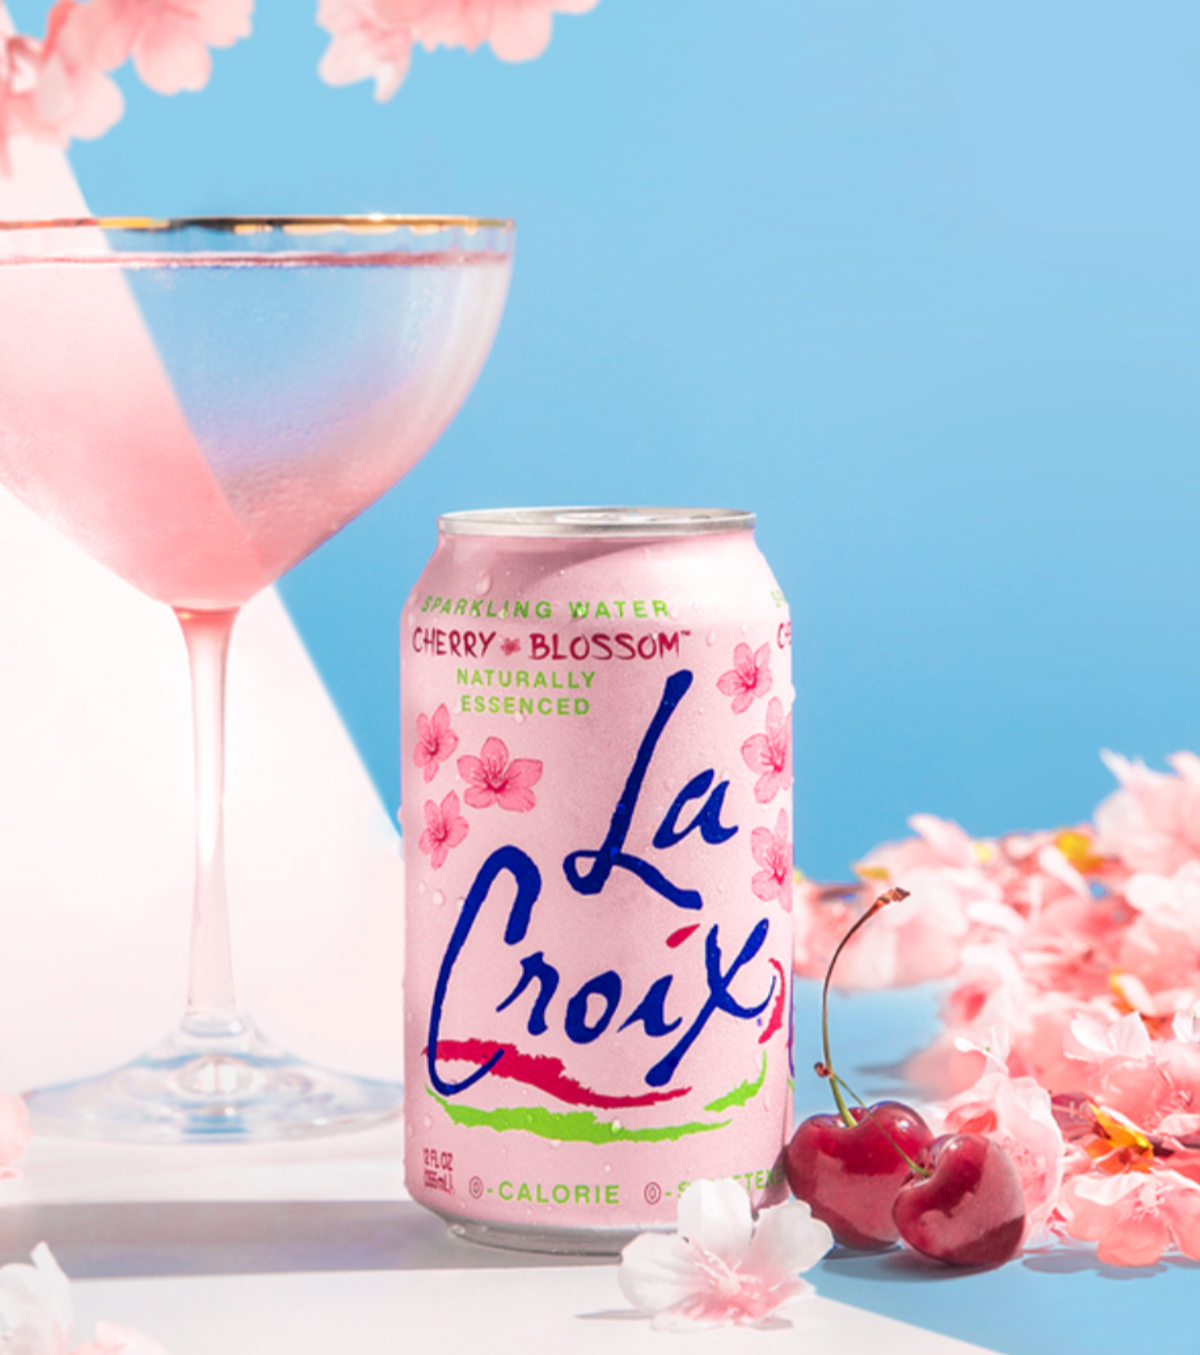 La Croix Cherry Blossom flavor